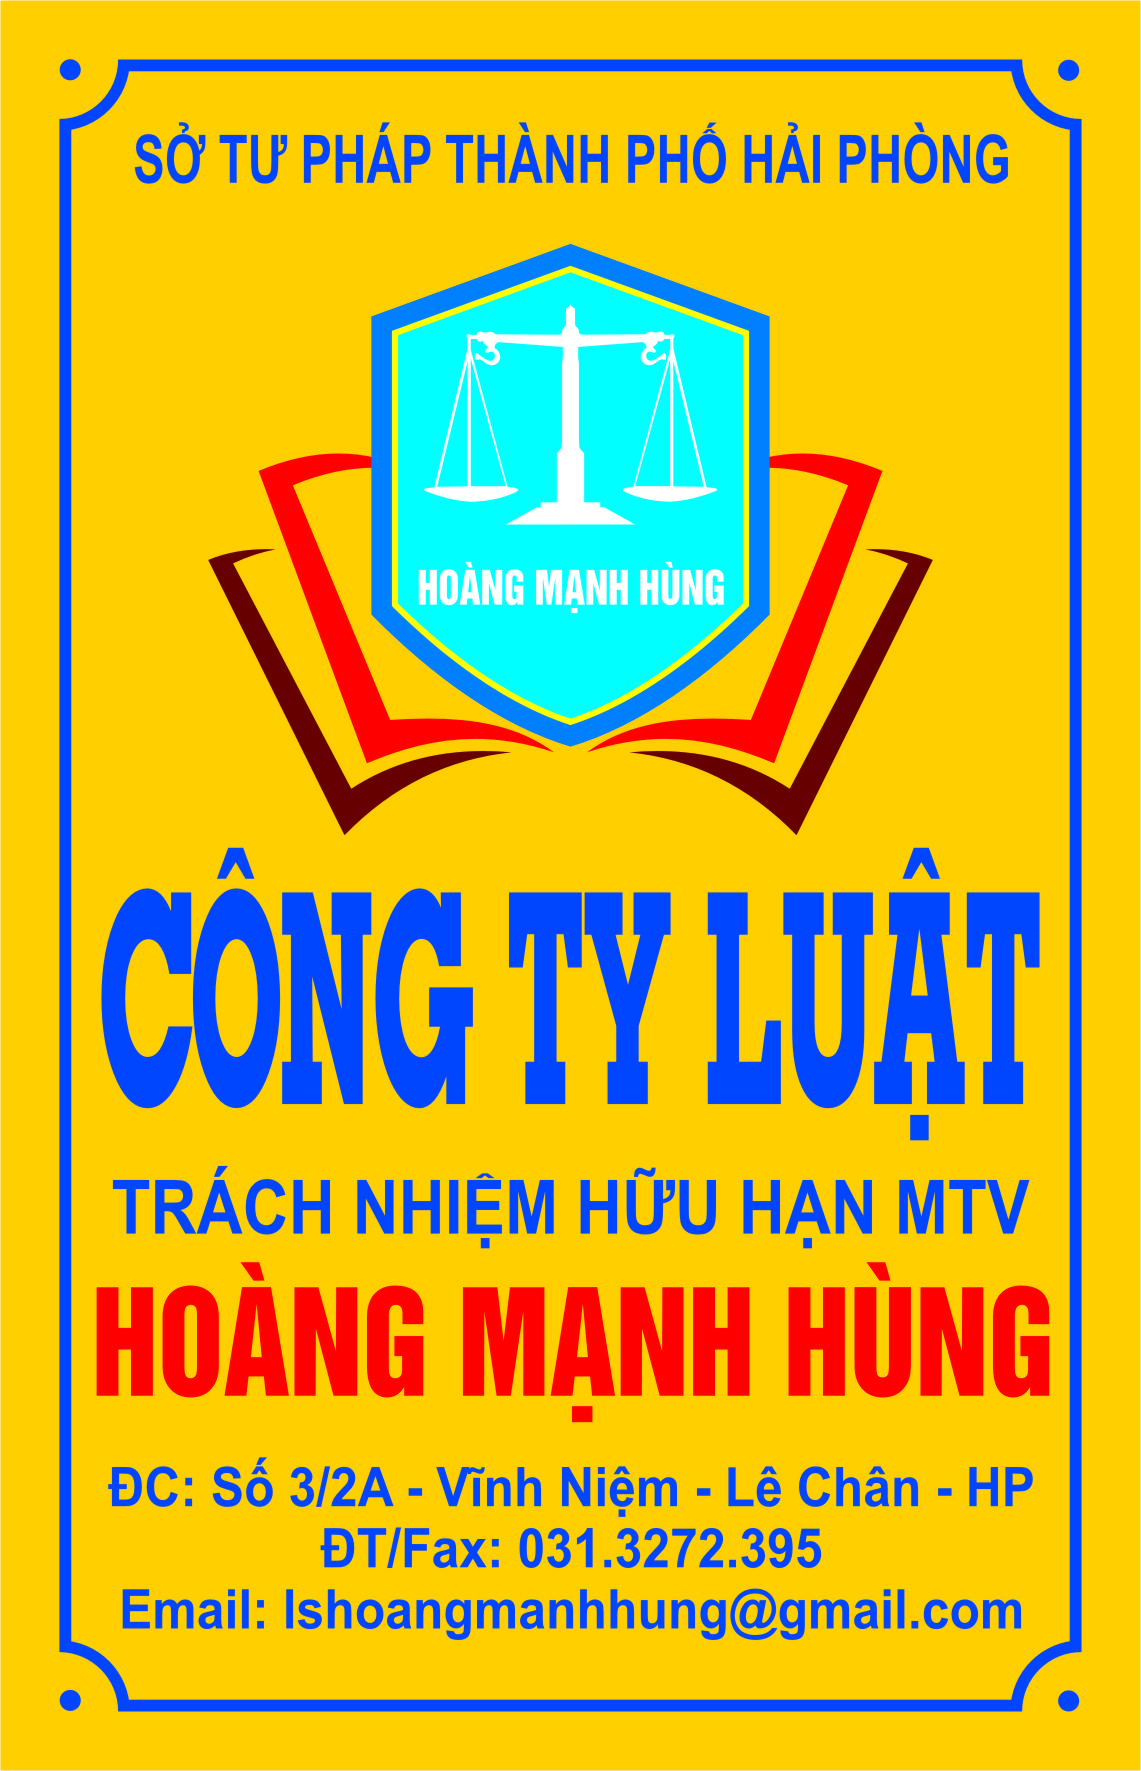 Công ty Luật TNHH MTV Hoàng Mạnh Hùng